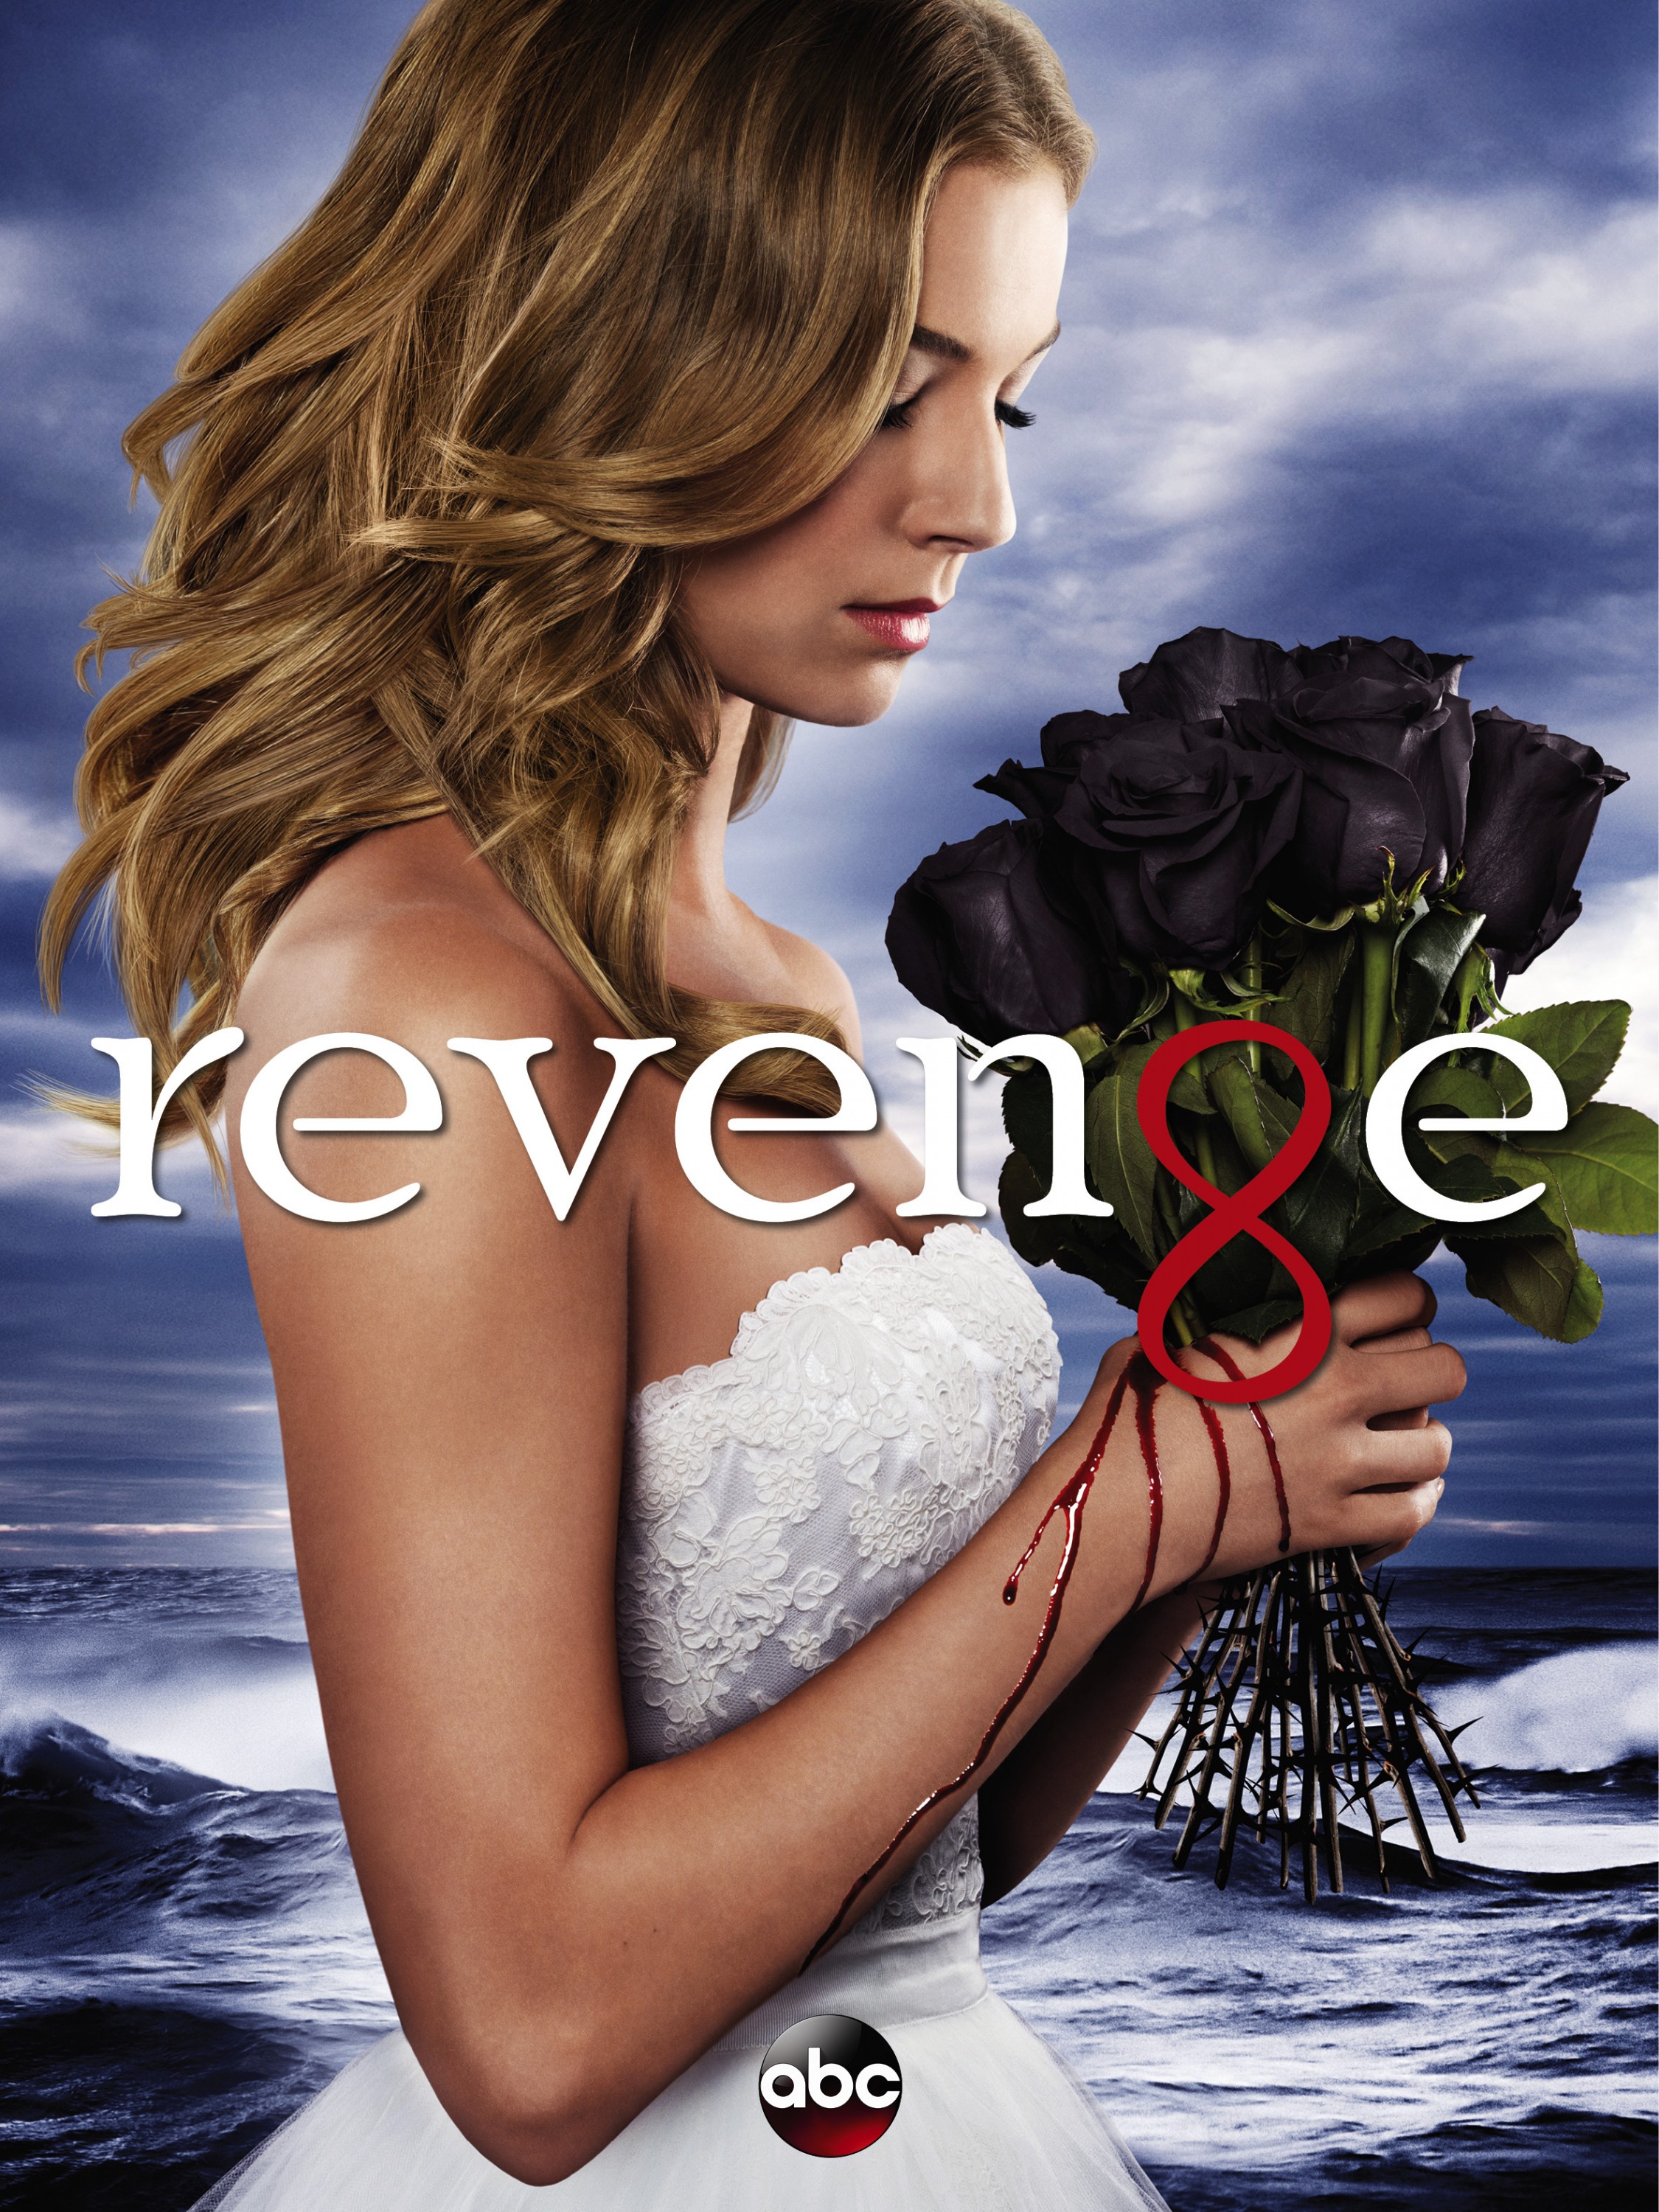 Mega Sized TV Poster Image for Revenge (#3 of 4)